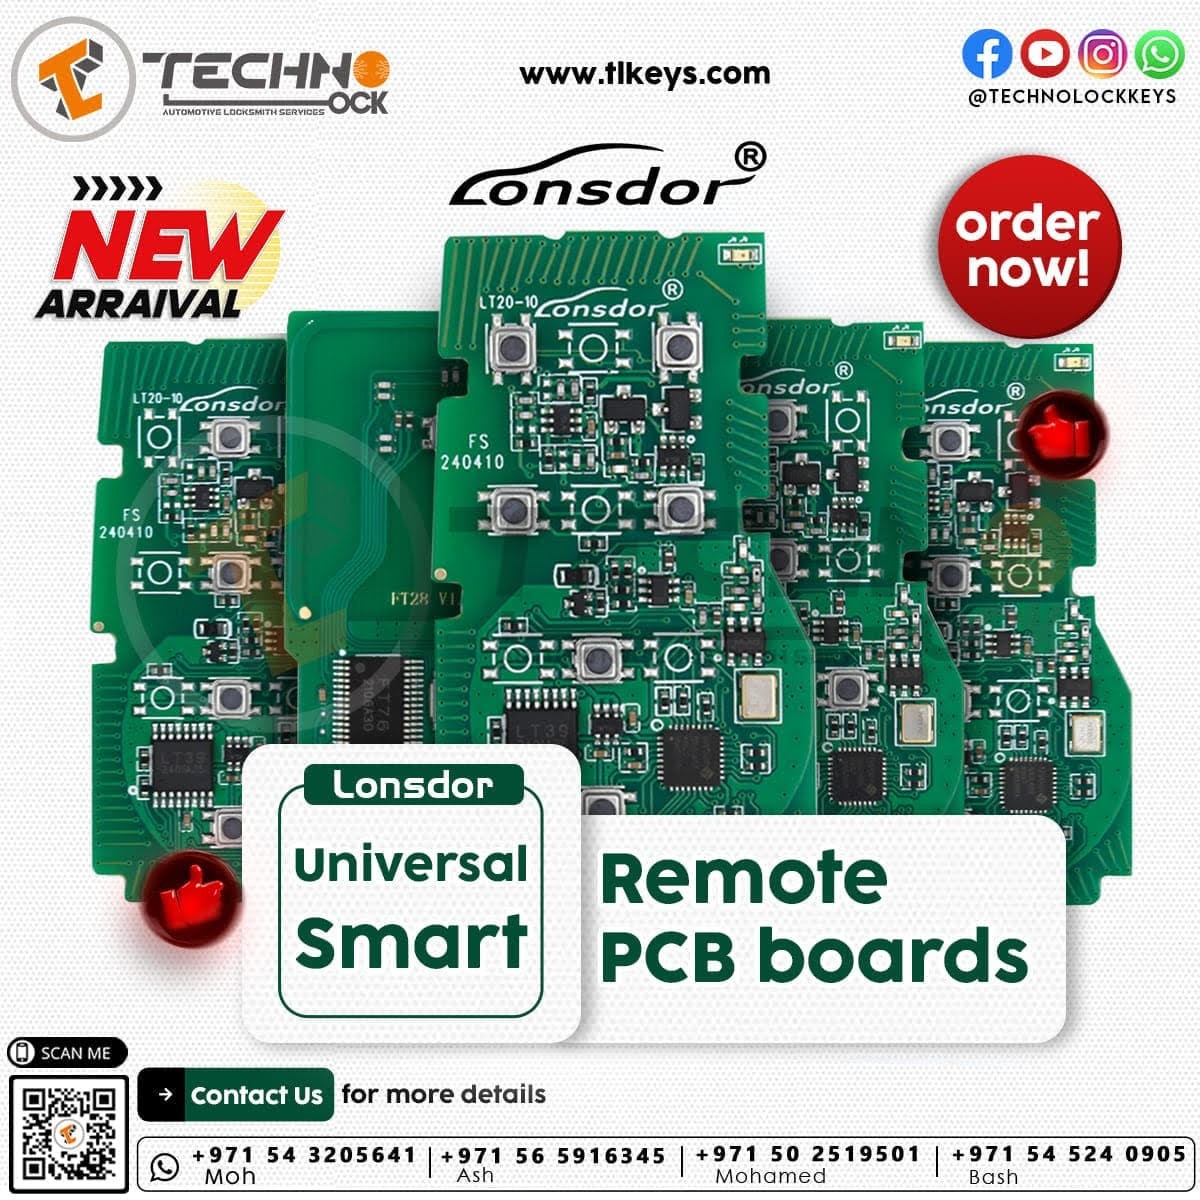 New Arrival LT20-10 Lonsdor Remote PCB Board